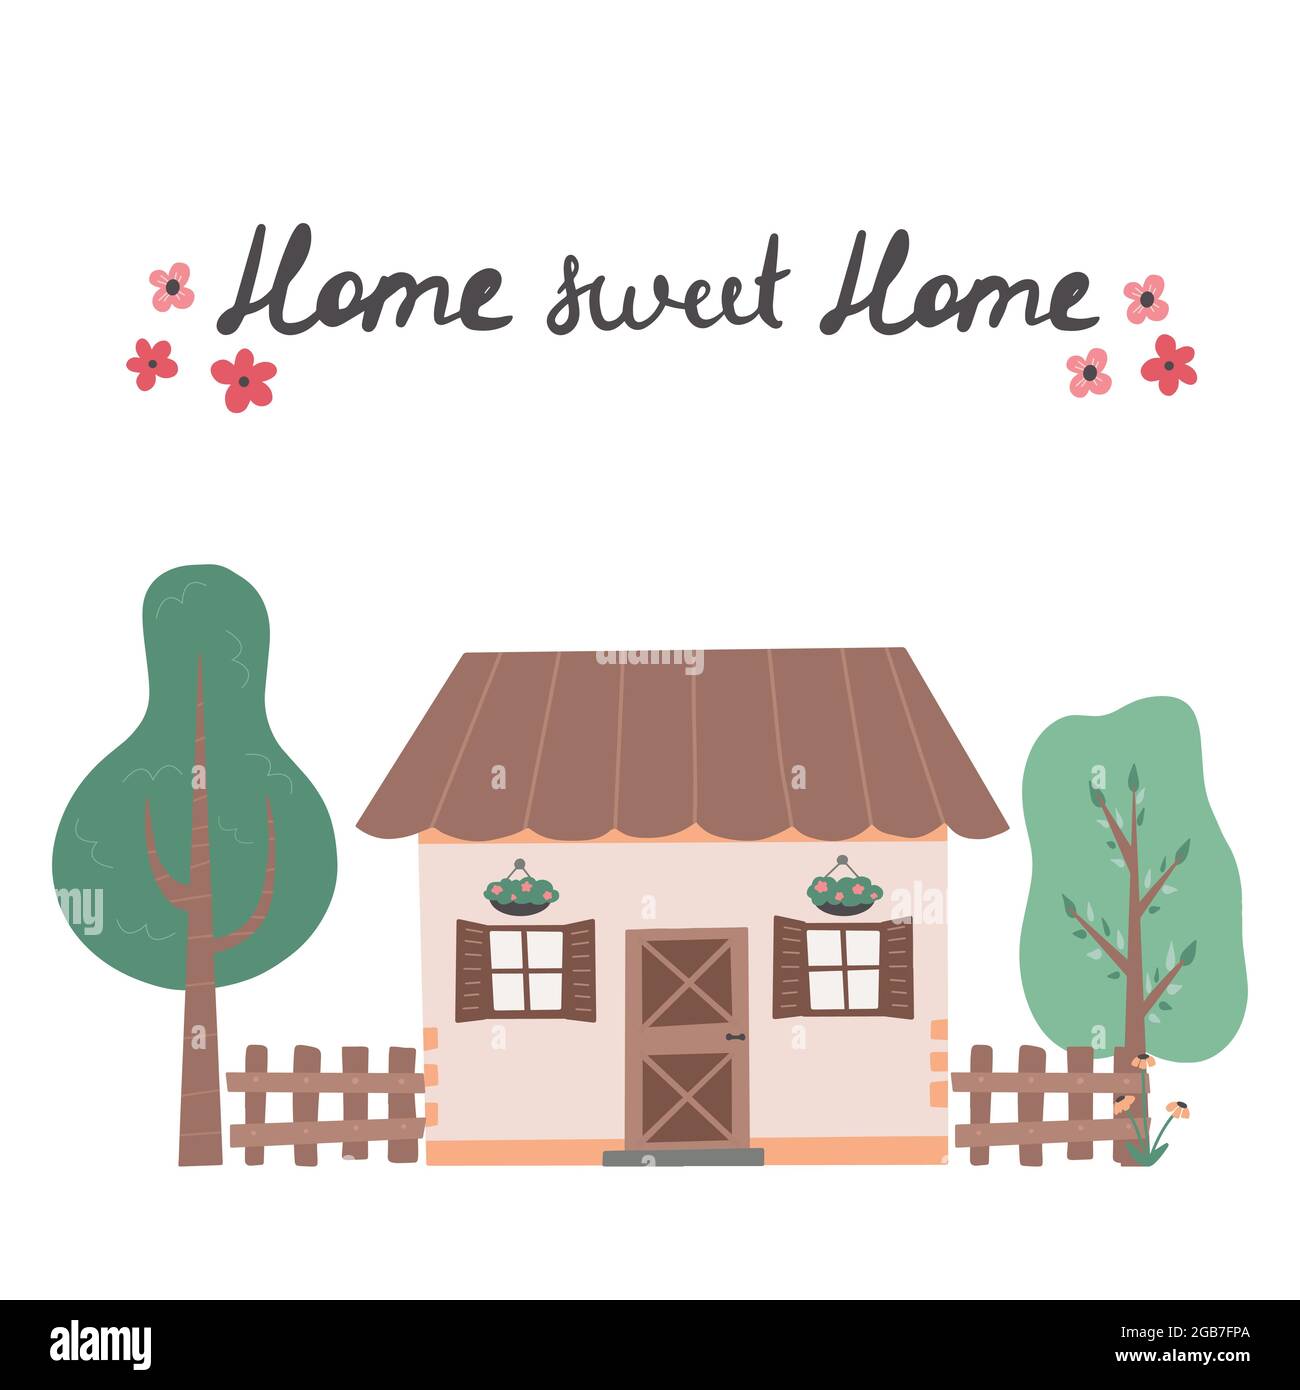 Scritta dolce casa con cute casa disegnata a mano illustrazione vettoriale trendy con case colorate. Illustrazione Vettoriale